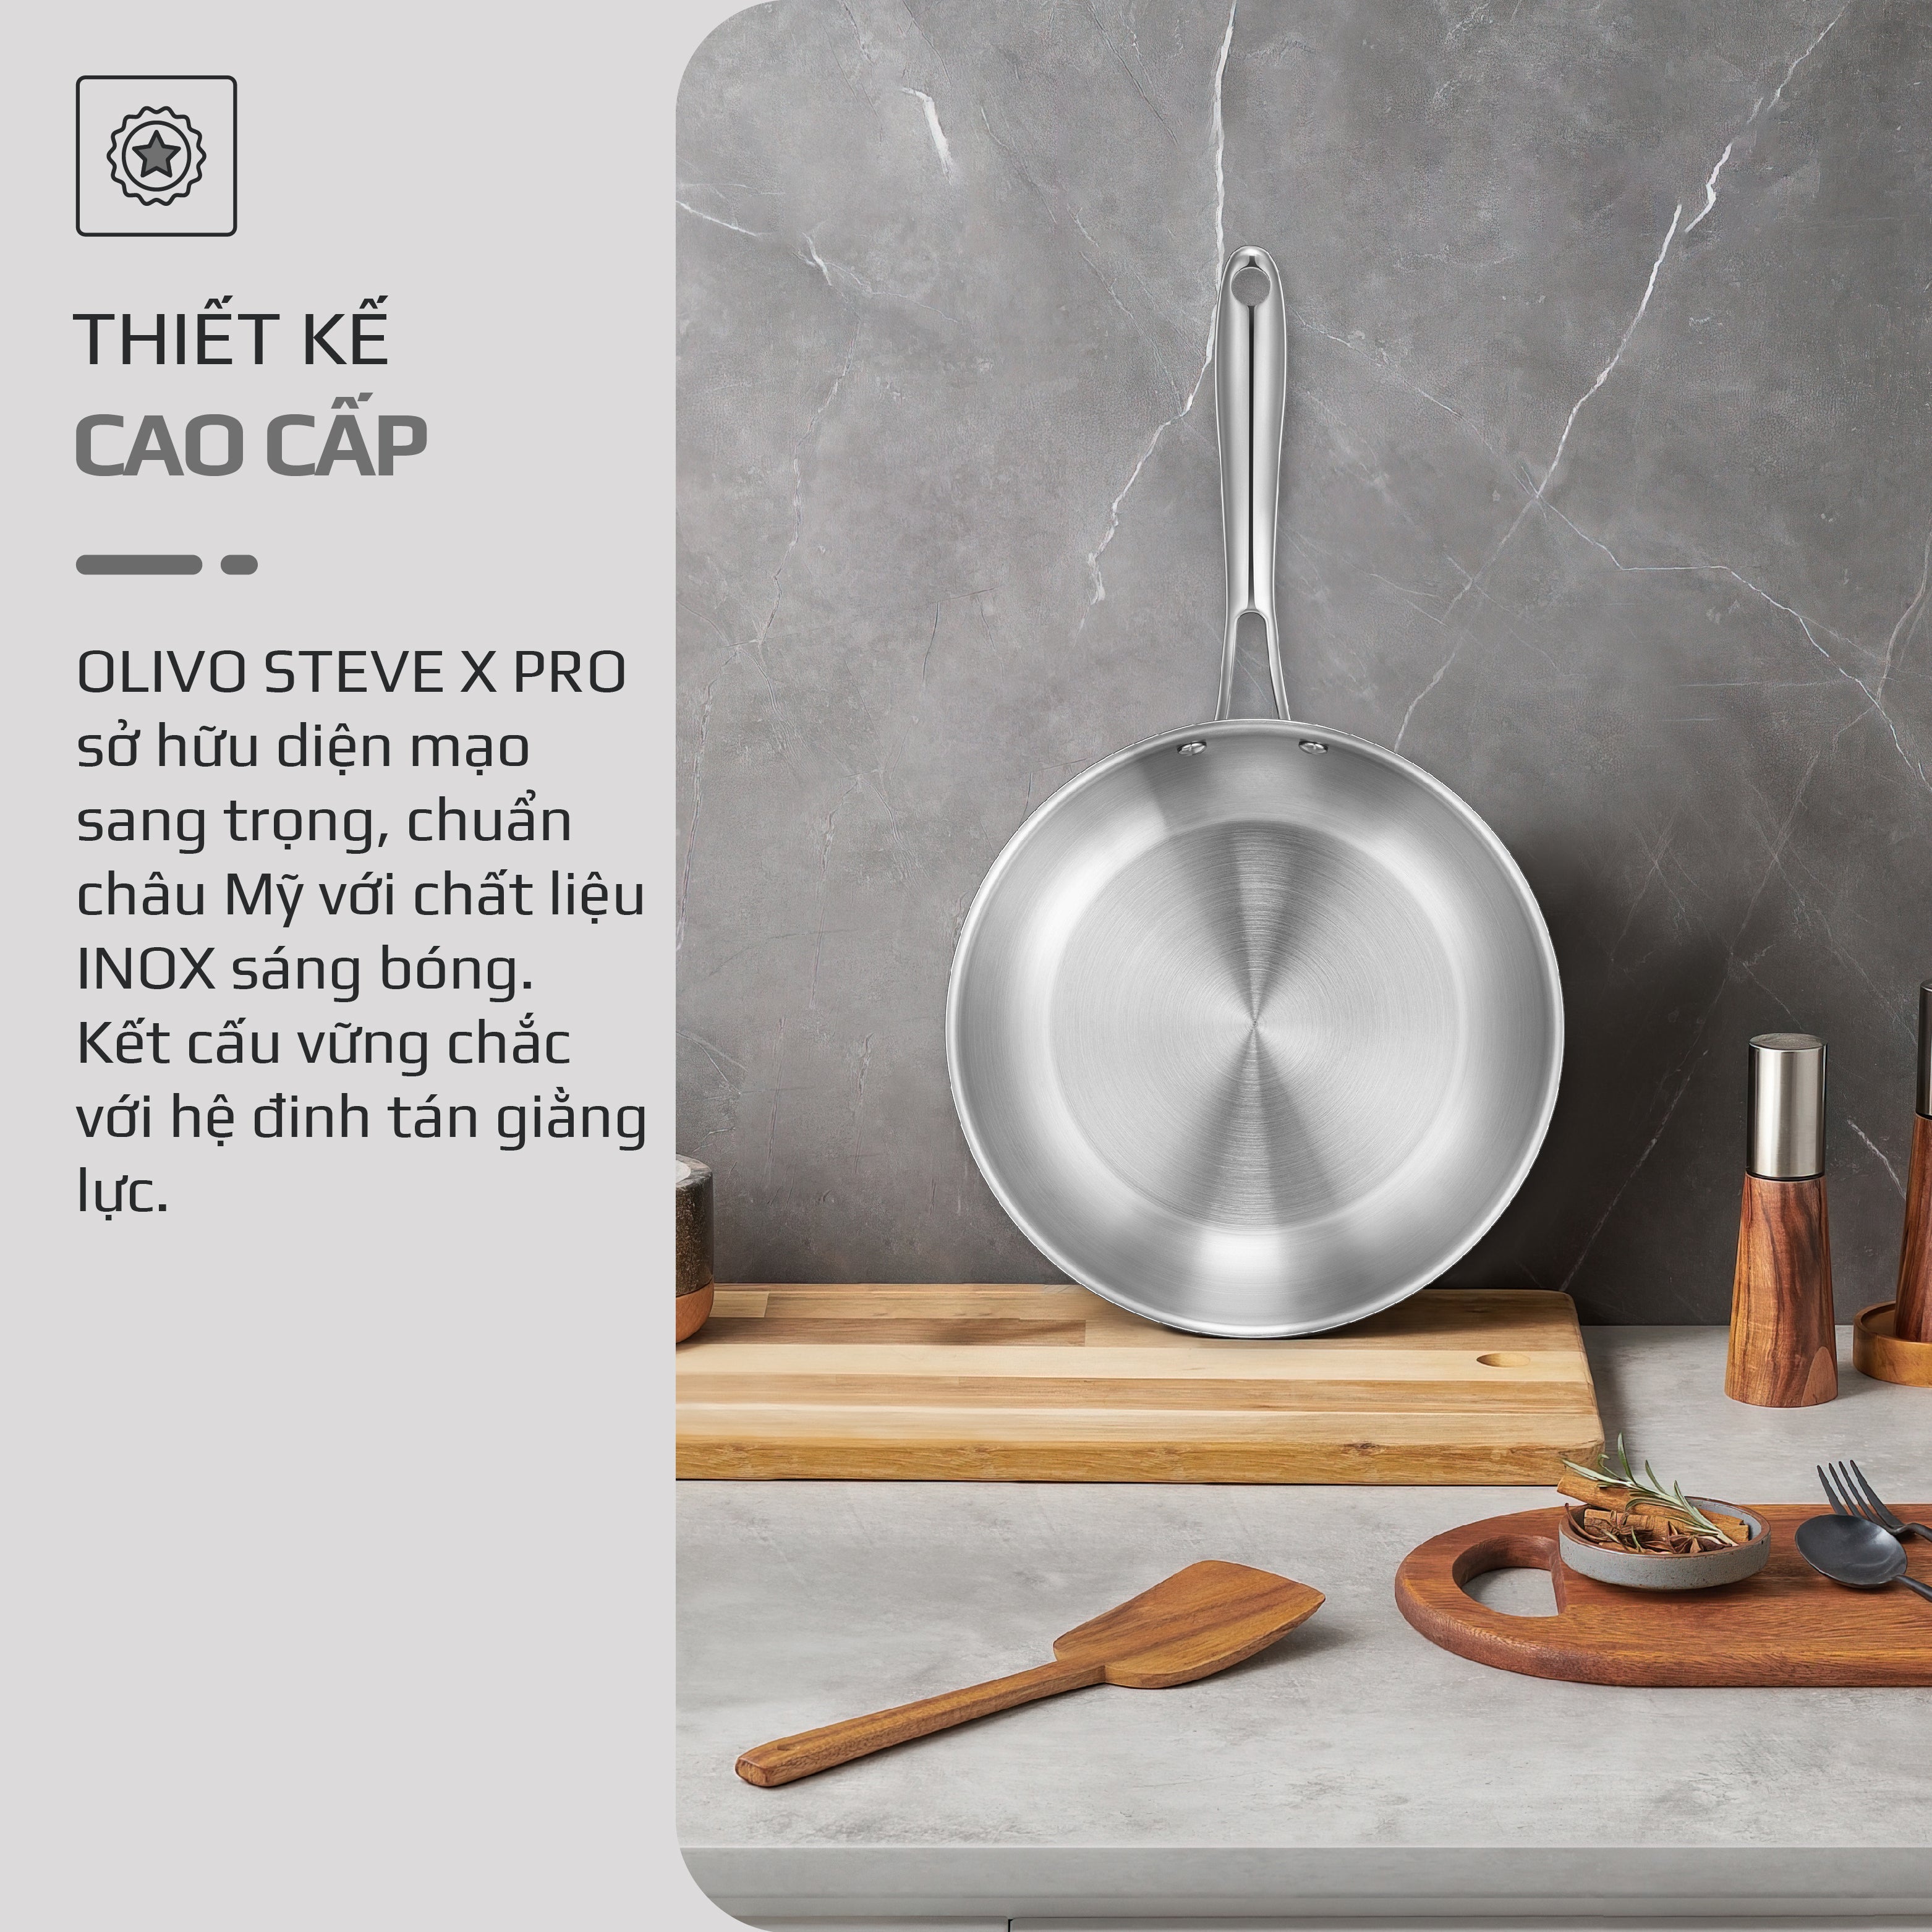 Chảo INOX OLIVO STEVE X PRO - Chống Dính Tự Nhiên, Đáy 5 Lớp, Đường Kính 24cm – Nấu Được Trên Mọi Loại Bếp